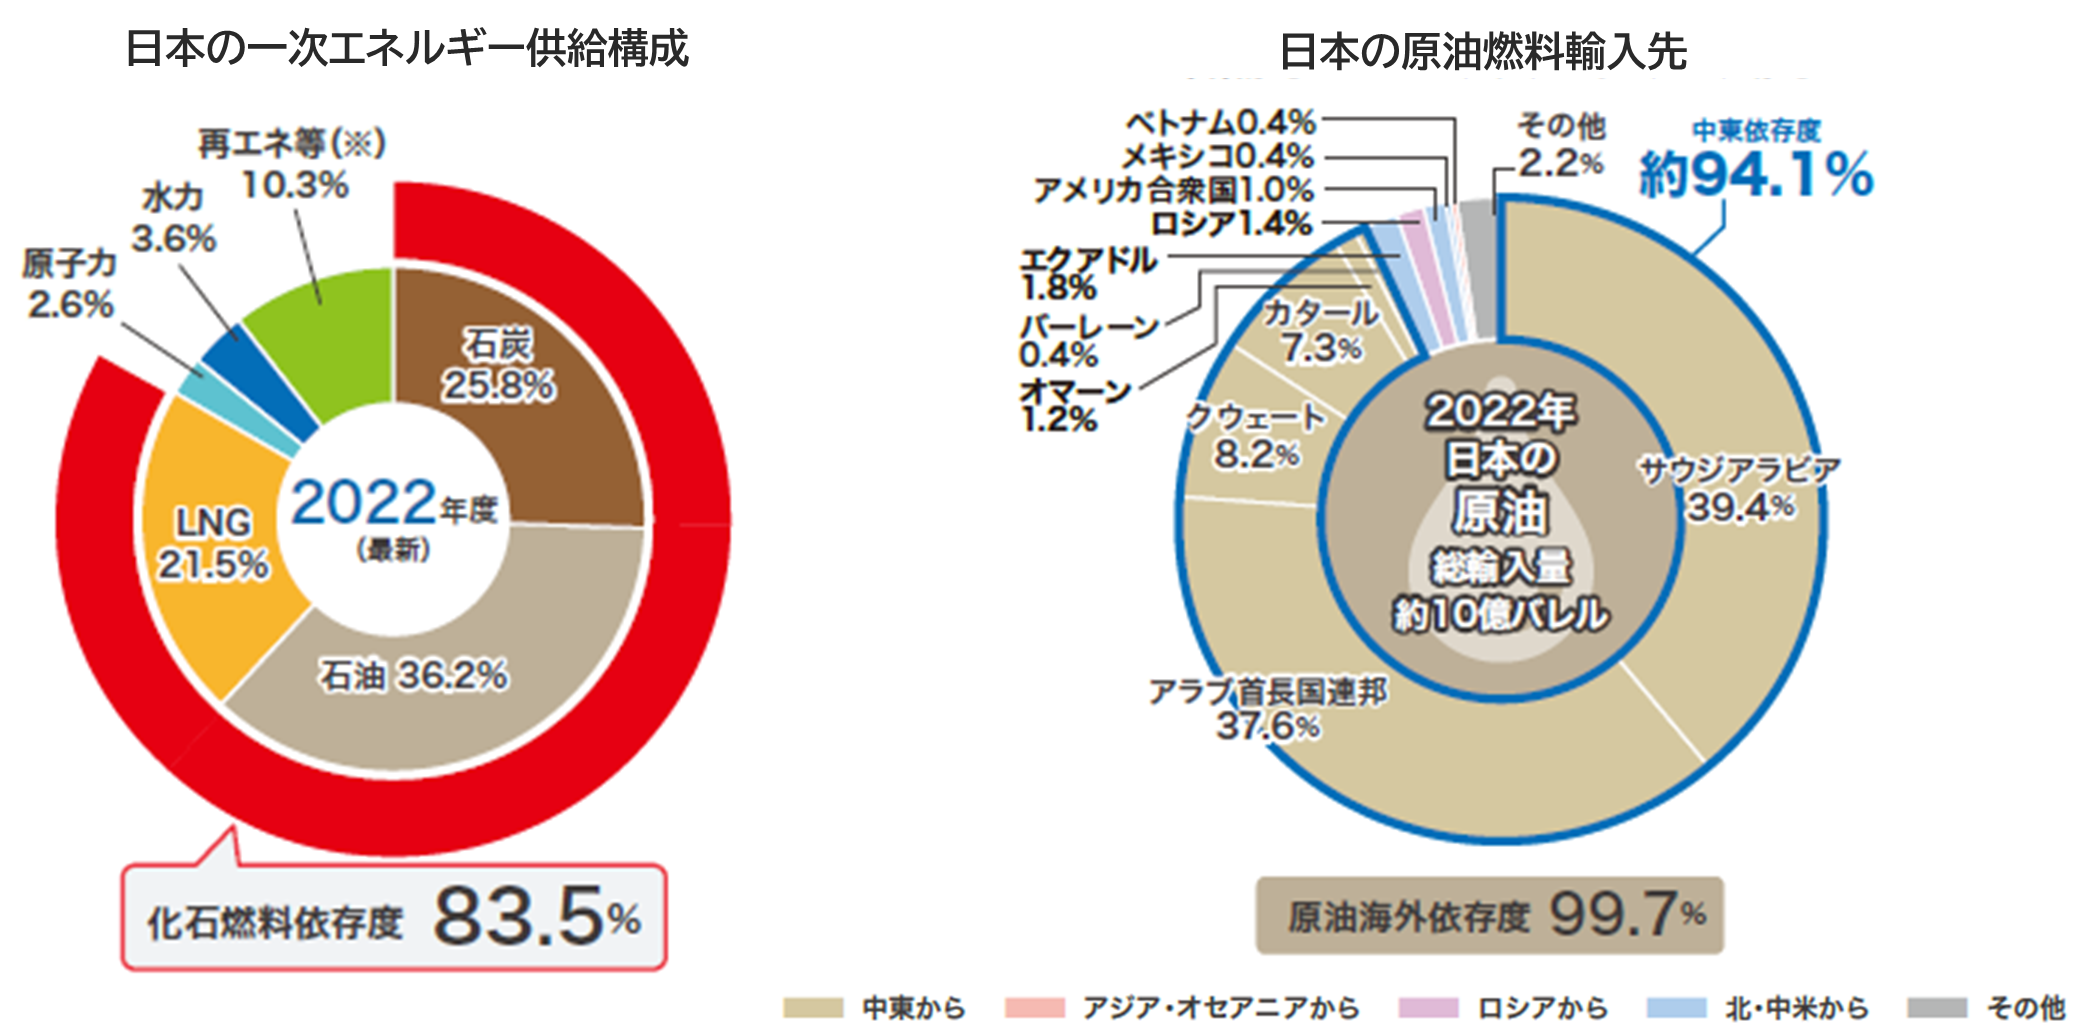 日本の一次エネルギー供給構成グラフ図と日本の原油燃料輸入先のグラフ図